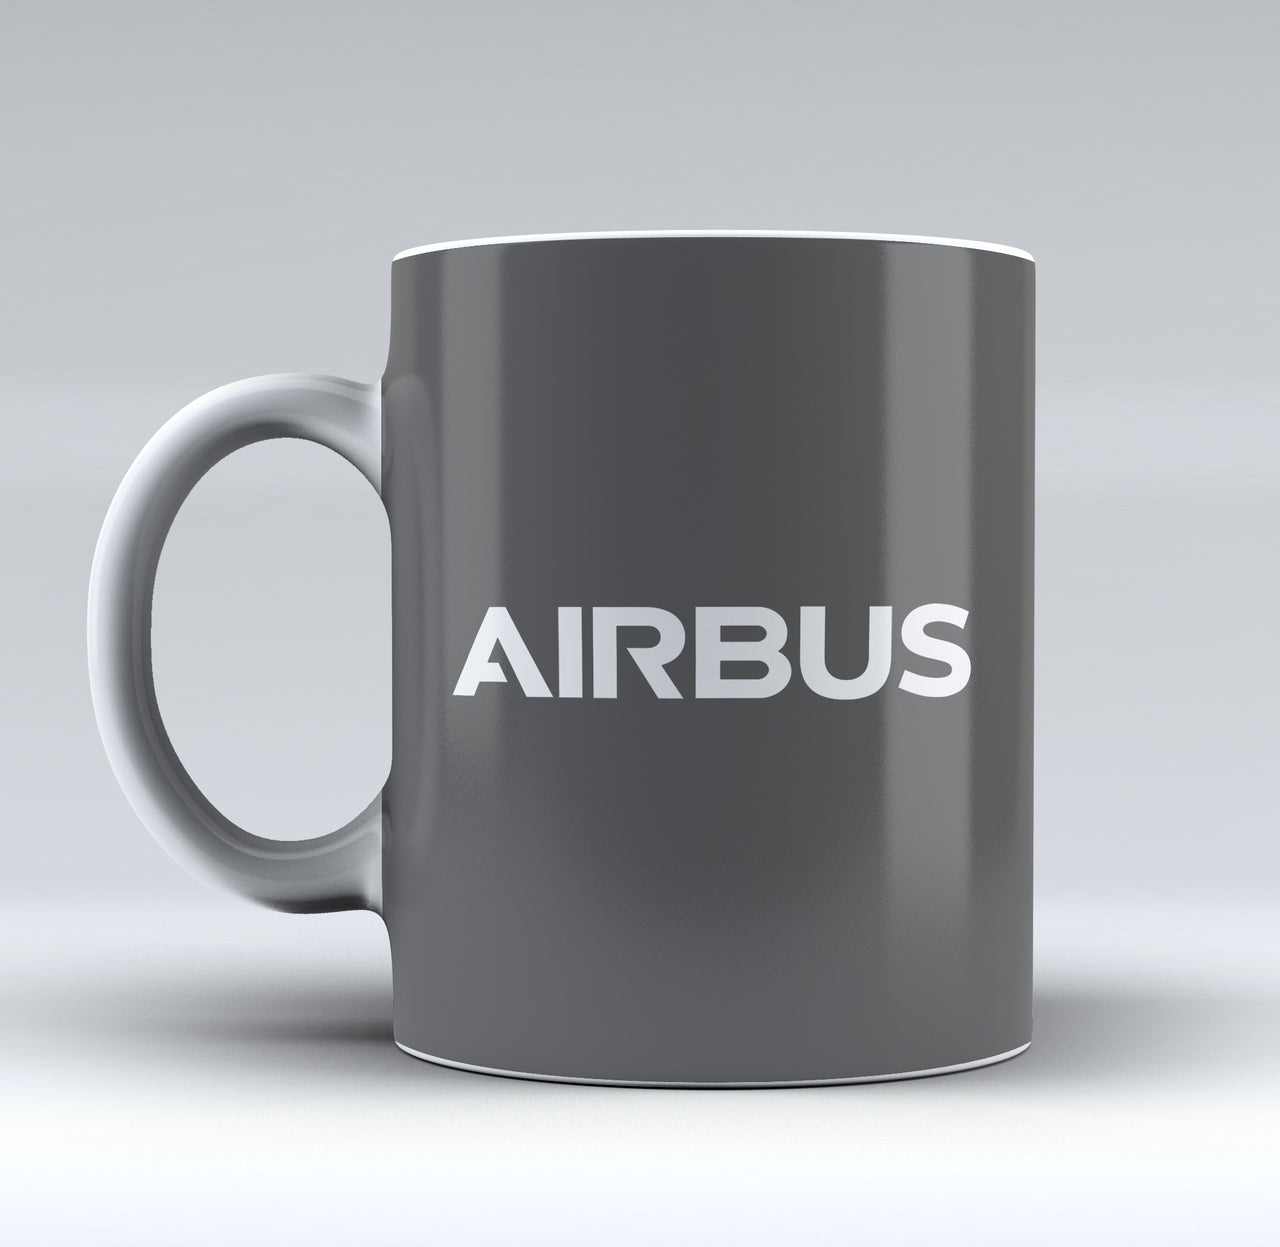 Airbus & Text Designed Mugs